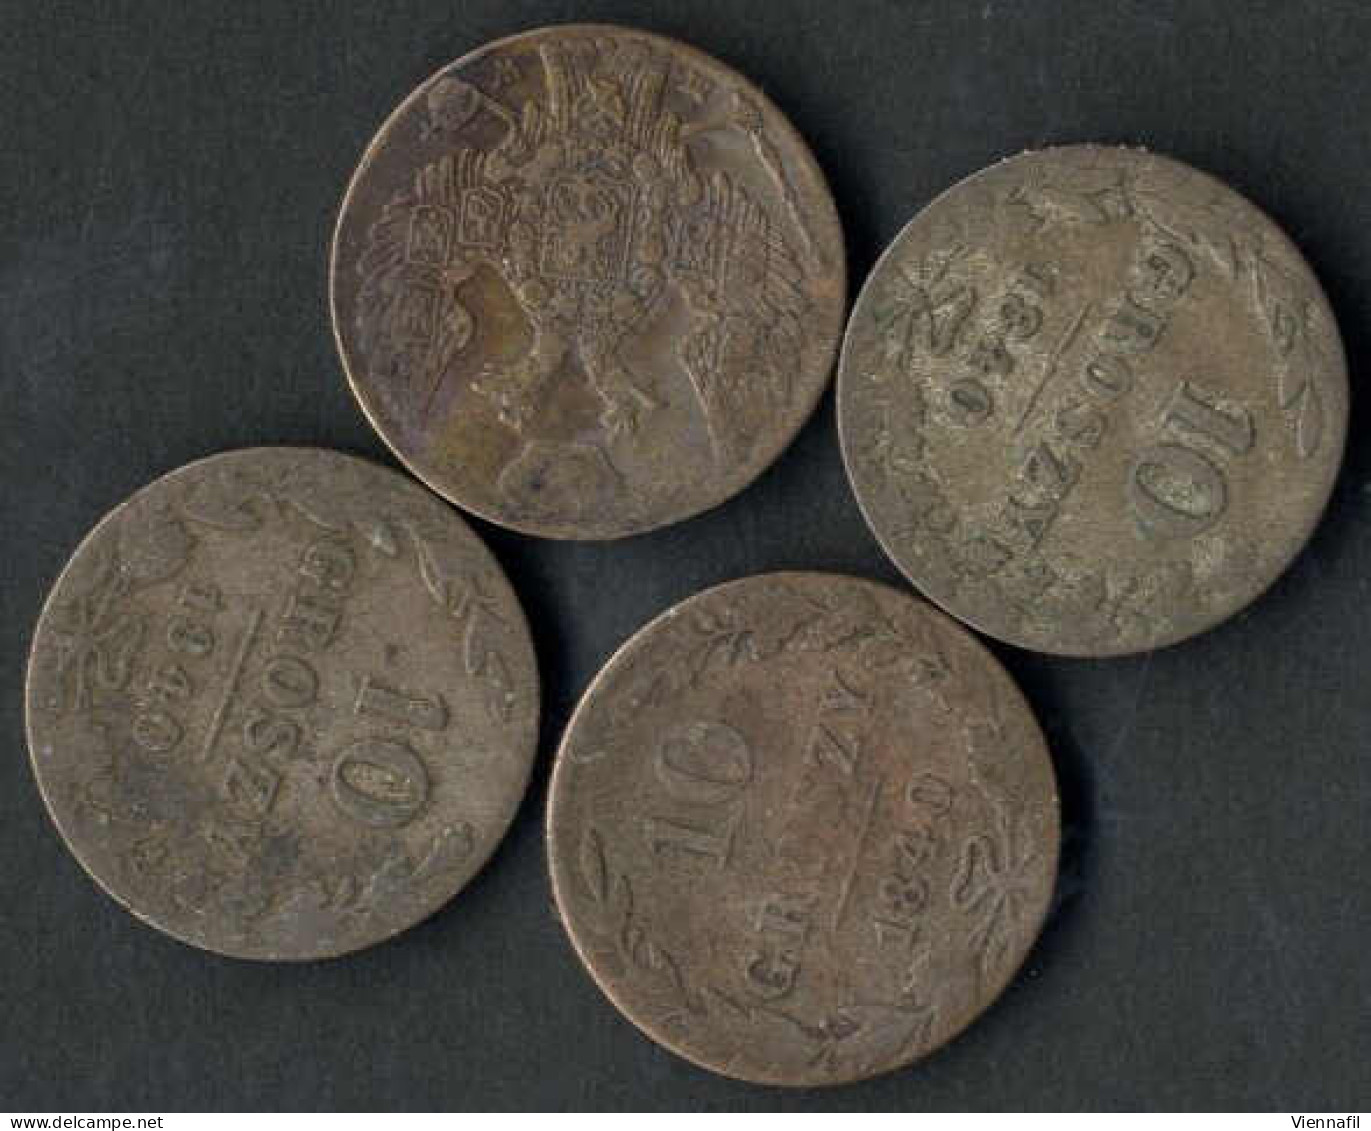 10 Groszy, 1840, Nikolaus I. 1825-55, Lot Mit Sieben Silbermünzen, Vier Mit Patina Schön, Drei Vorzüglich, C.113a - Poland